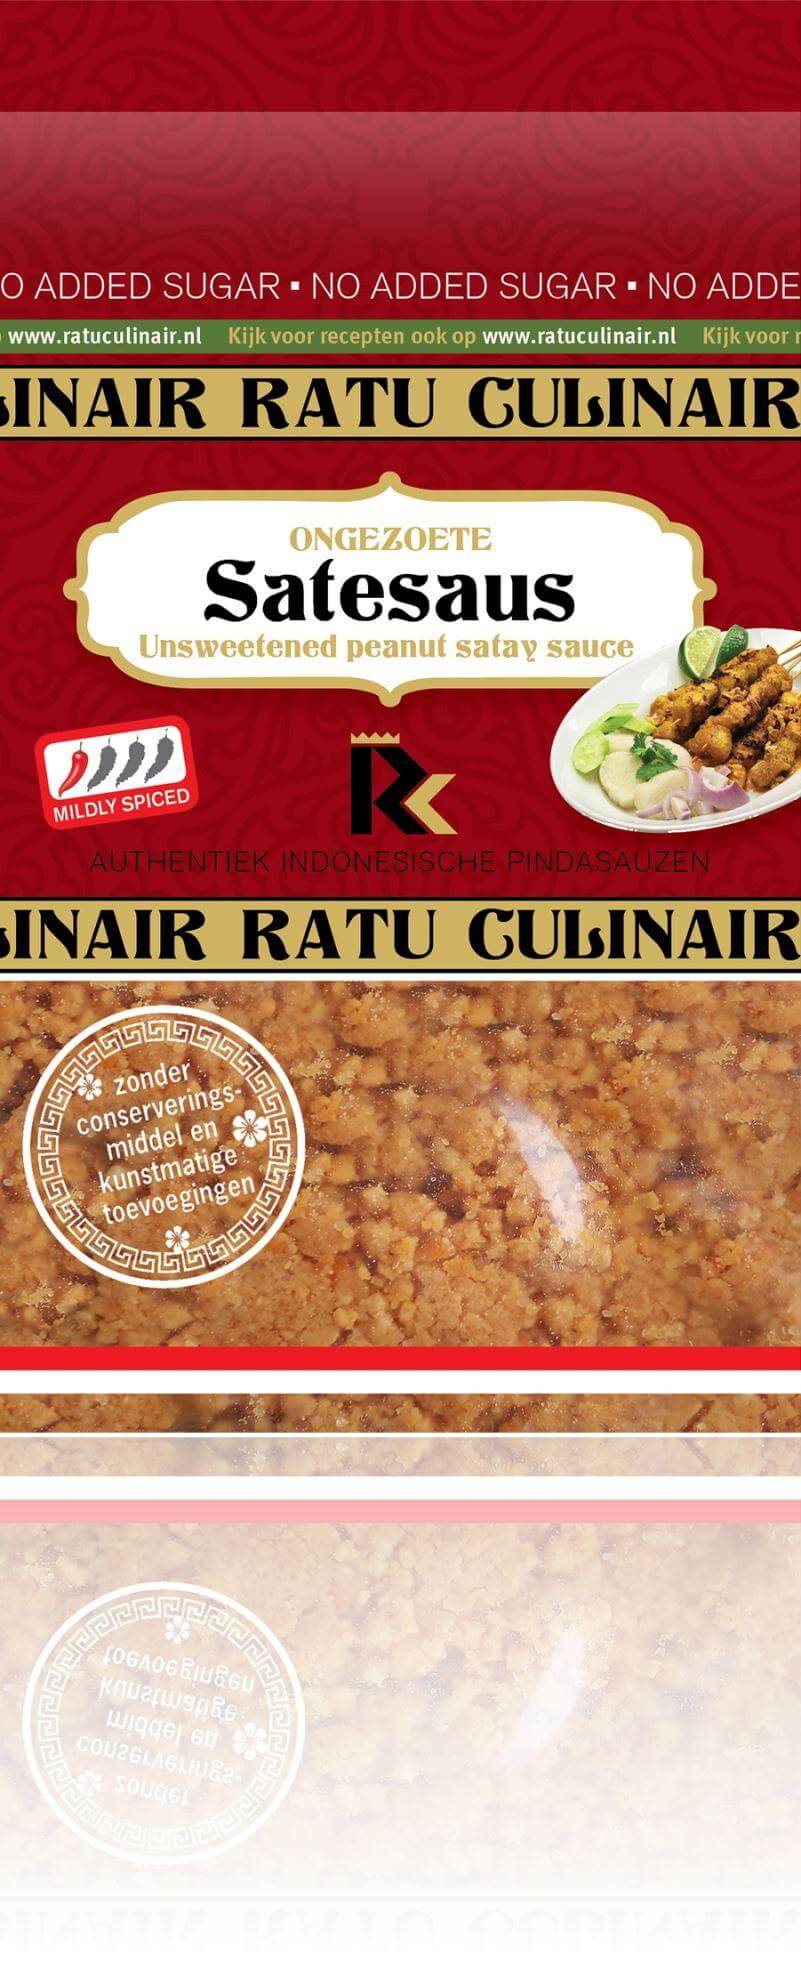 Ratu culinair maakt de meest authentieke pindasaus zonder suiker!